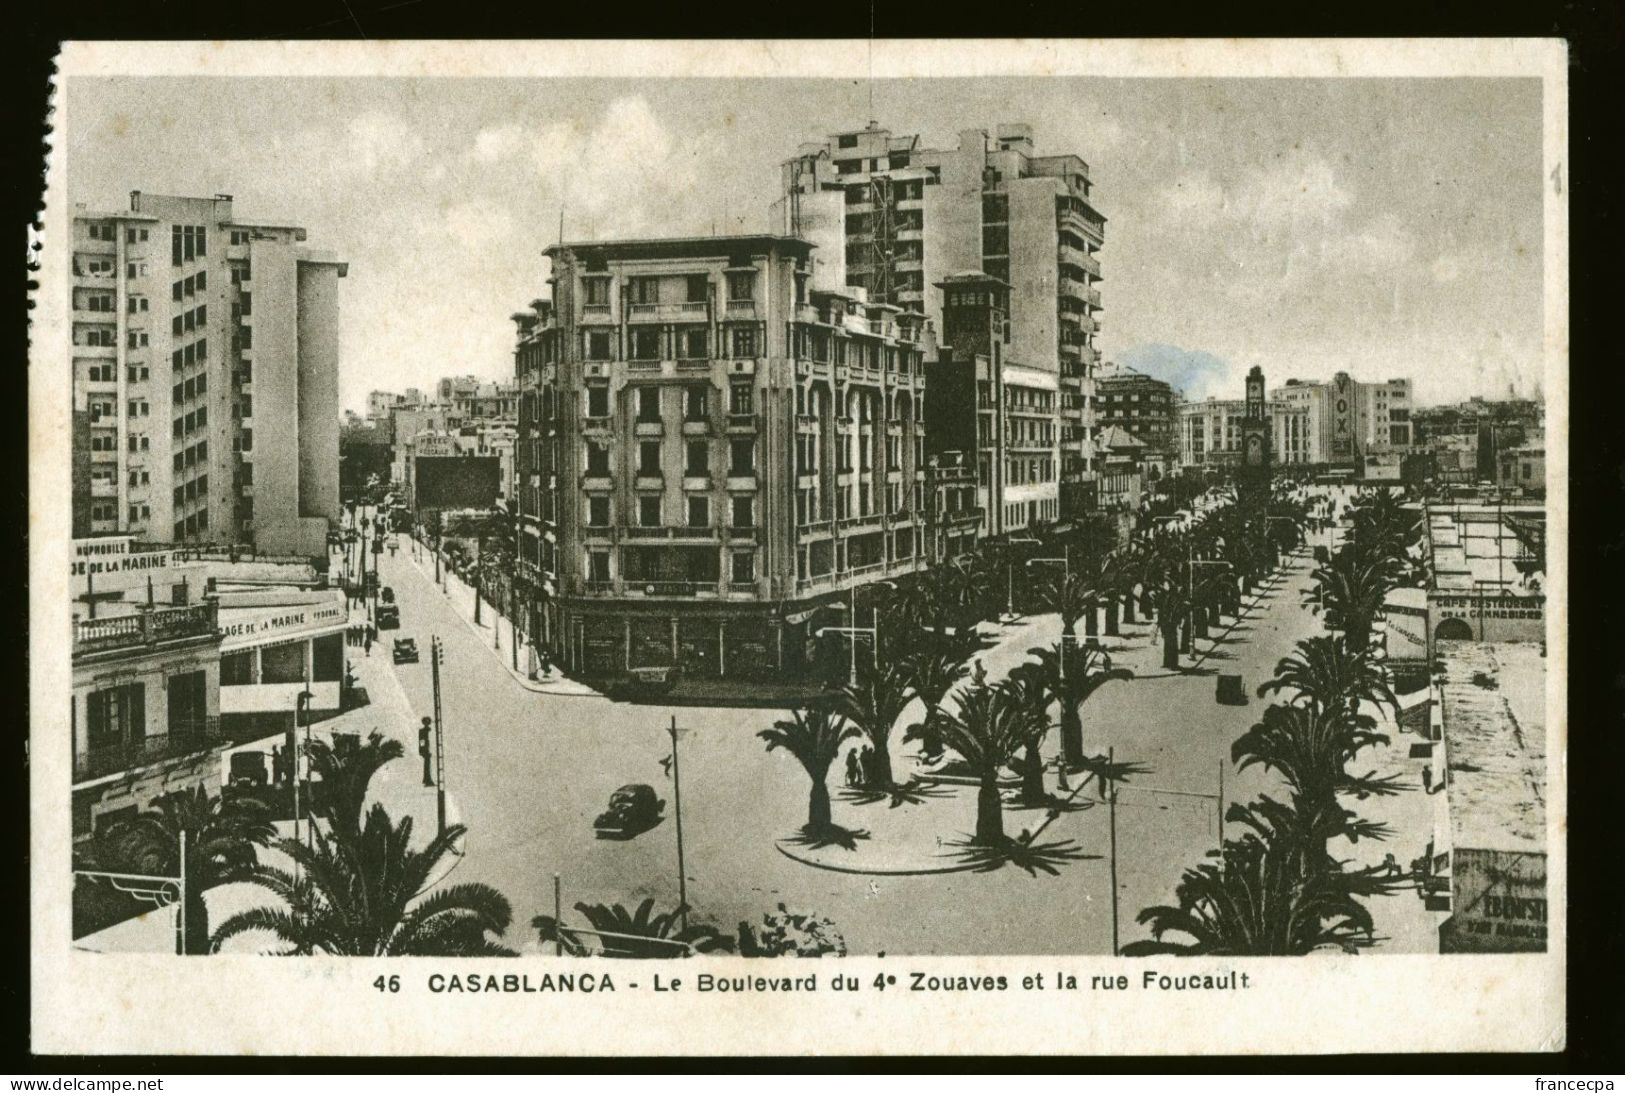 1048 - MAROC - CASABLANCA - Le Boulevard Du 4e Zouaves Et La Rue Foucault - Casablanca